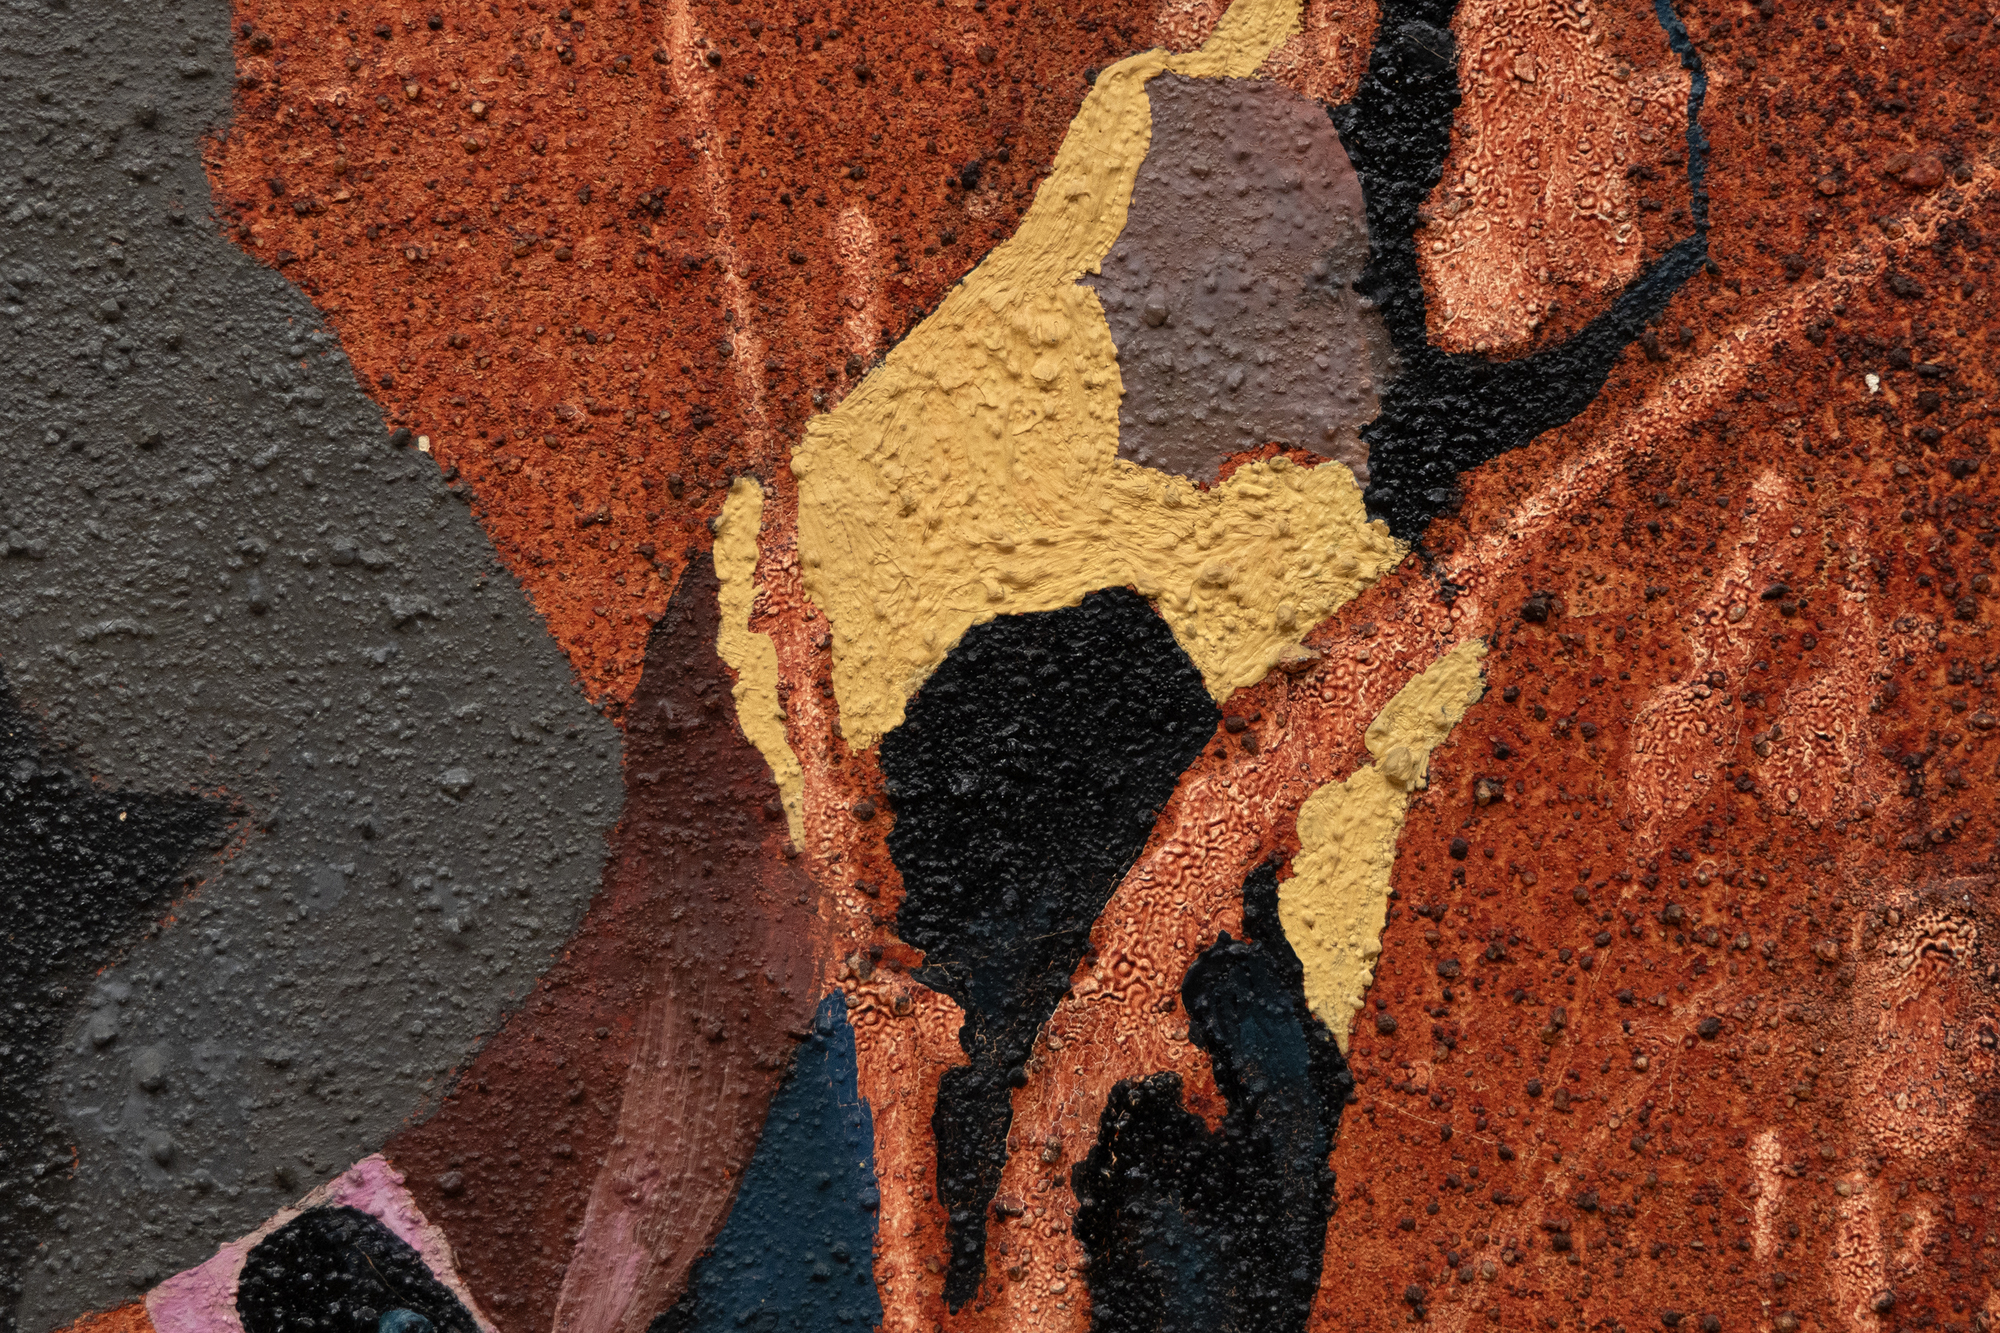 Als Dorothy Hood 1956 Genies malte, betrat sie Neuland und entwickelte verschiedene Methoden und ein organisches Formenvokabular, das sie aus ihren Beobachtungen der Natur und des menschlichen Körpers bezog. Abstrakte und figurative Elemente gehen ein dynamisches Wechselspiel ein, sie verweben, verflechten und verschmelzen ihre Identitäten in einer metaphysischen Suppe, wobei ihre mehrdeutige und transformative Natur berücksichtigt wird. Anstelle der formalen Stasis eines gewebten Wandteppichs atmet, dehnt und fließt die Abstraktion in Genies in einem Energiefeld aus sehnigen, bandartigen Ranken. Es ist ein Werk, das eine Verschmelzung von Abstraktion und Surrealismus verkörpert. Die angedeutete Tiefenschärfe, die Perspektive und die figurativen Bezüge suggerieren eine Frau, deren gewölbter Körper dem Werk eine emotionale, psychologische oder mythologische Tiefe verleiht. Diese Elemente fangen das komplexe Wesen der Haltung und Situation einer Frau ein und lassen die Grenzen zwischen zwei verschiedenen künstlerischen Strömungen verschmelzen.